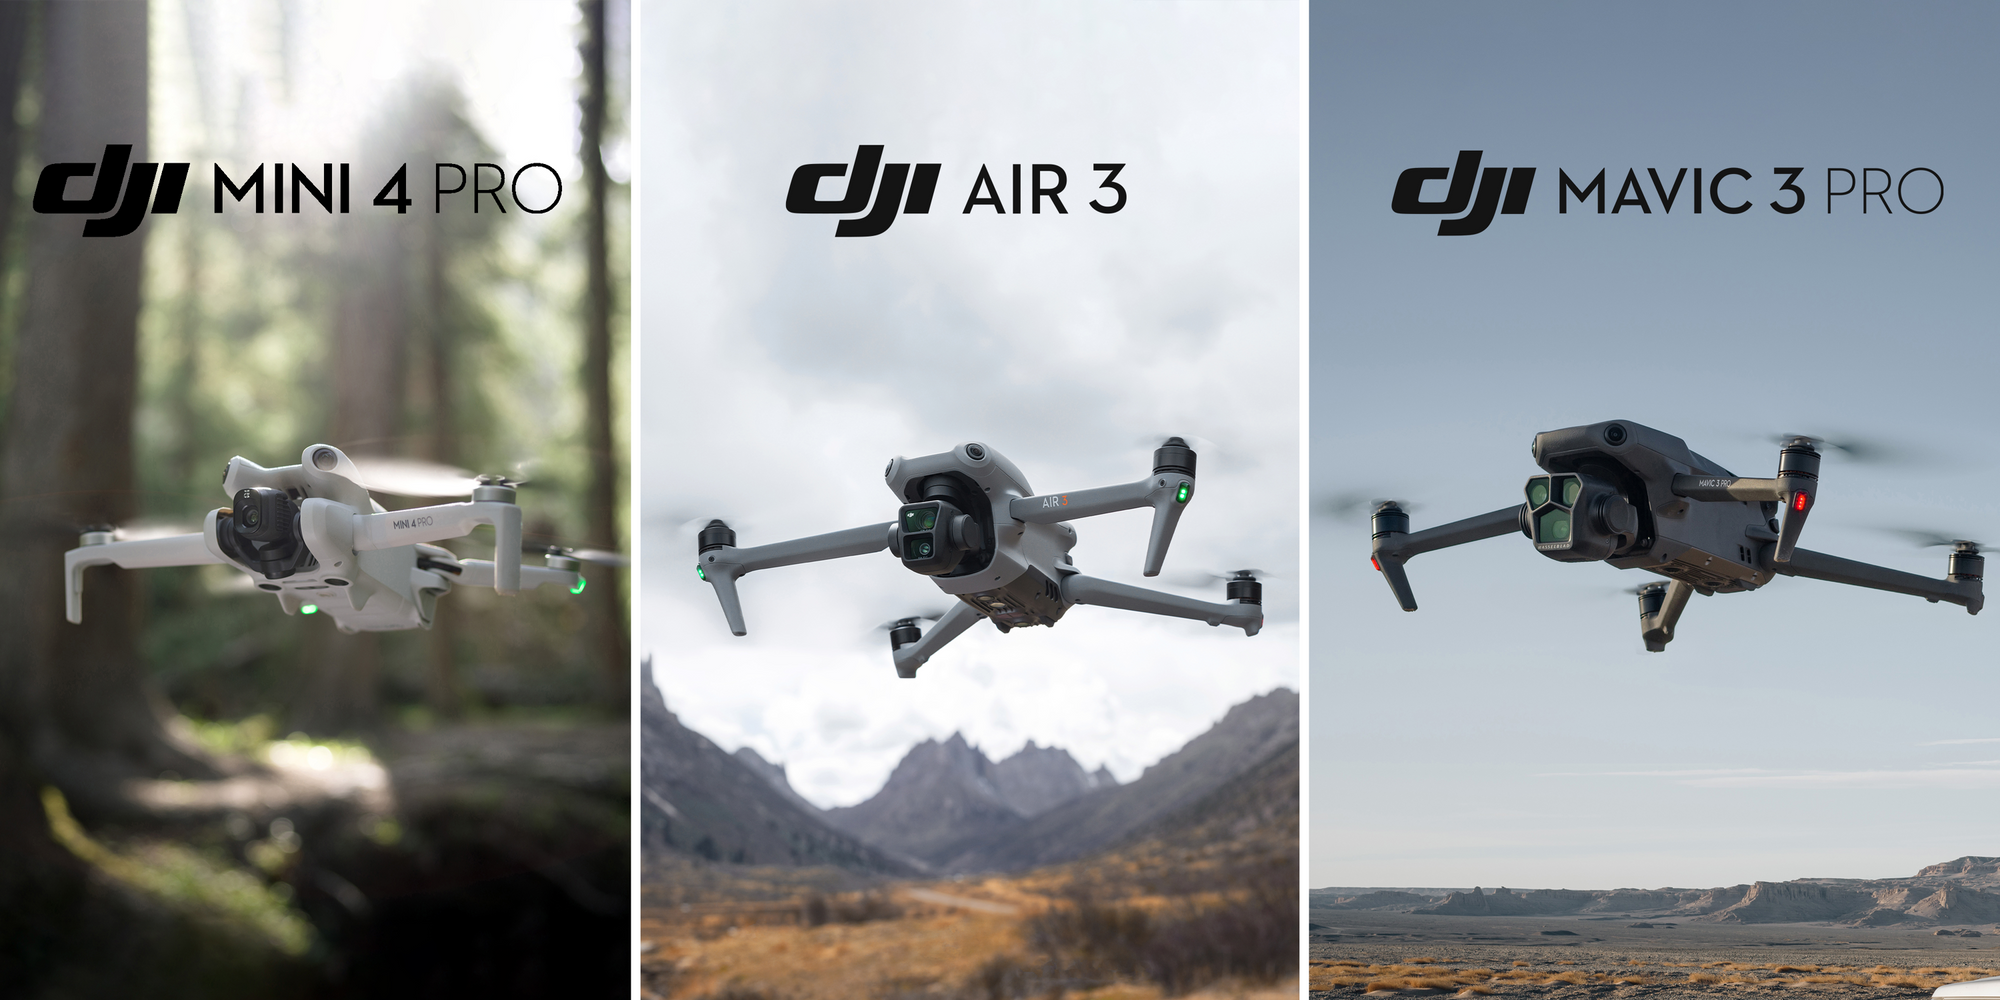 Mini 4 Pro Vs. Air 3 Vs. Mavic 3 Pro: Which DJI drone is right for you?